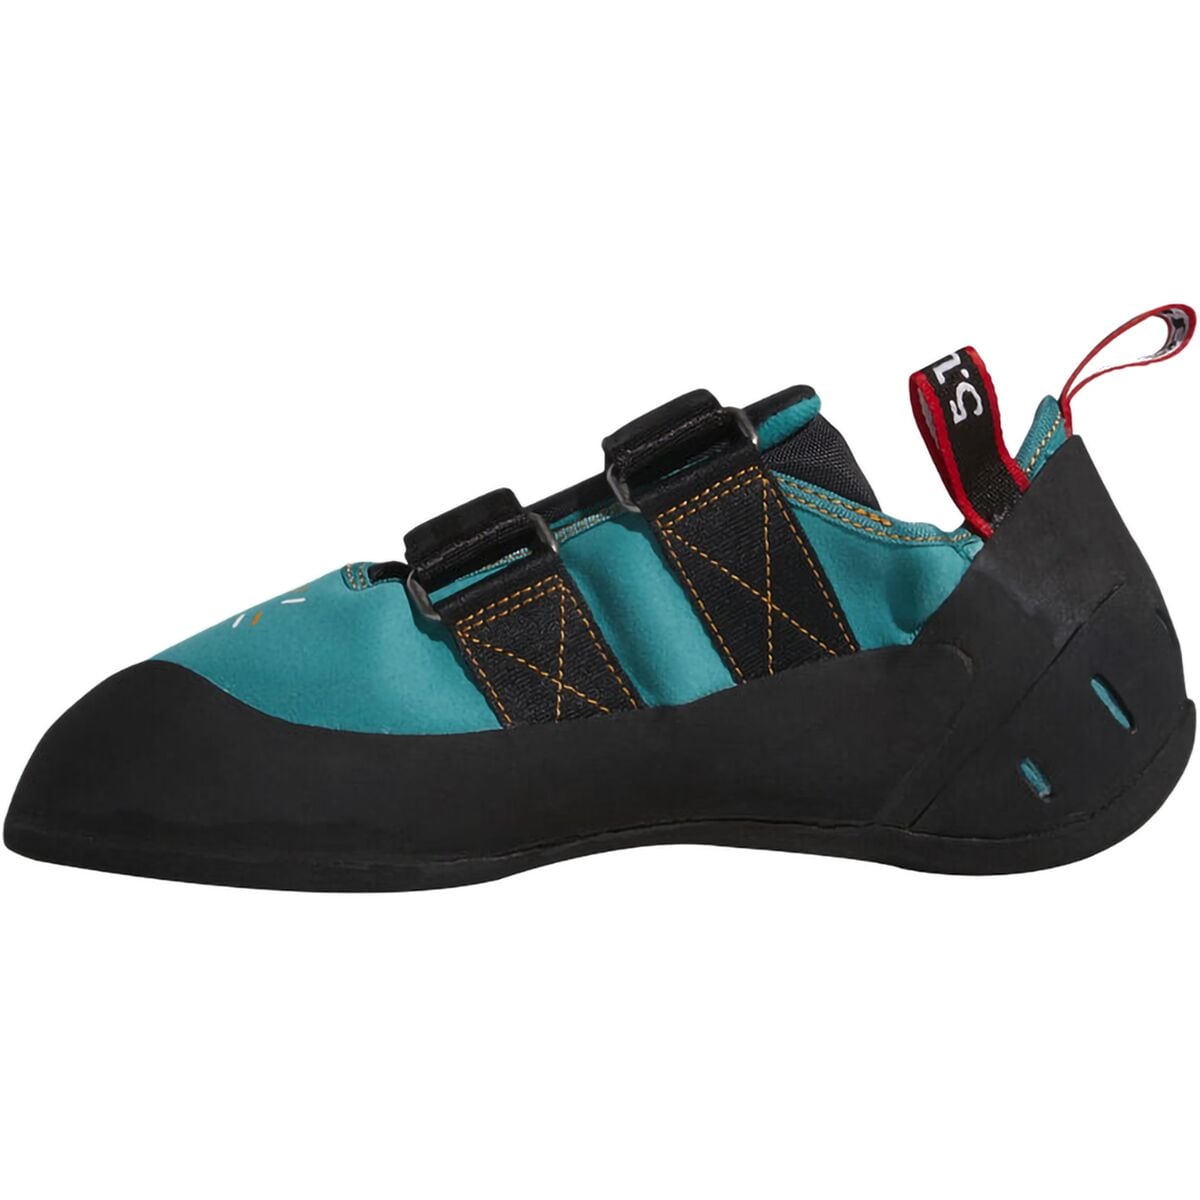 Five Ten Anasazi LV Climbing Shoes - Women's